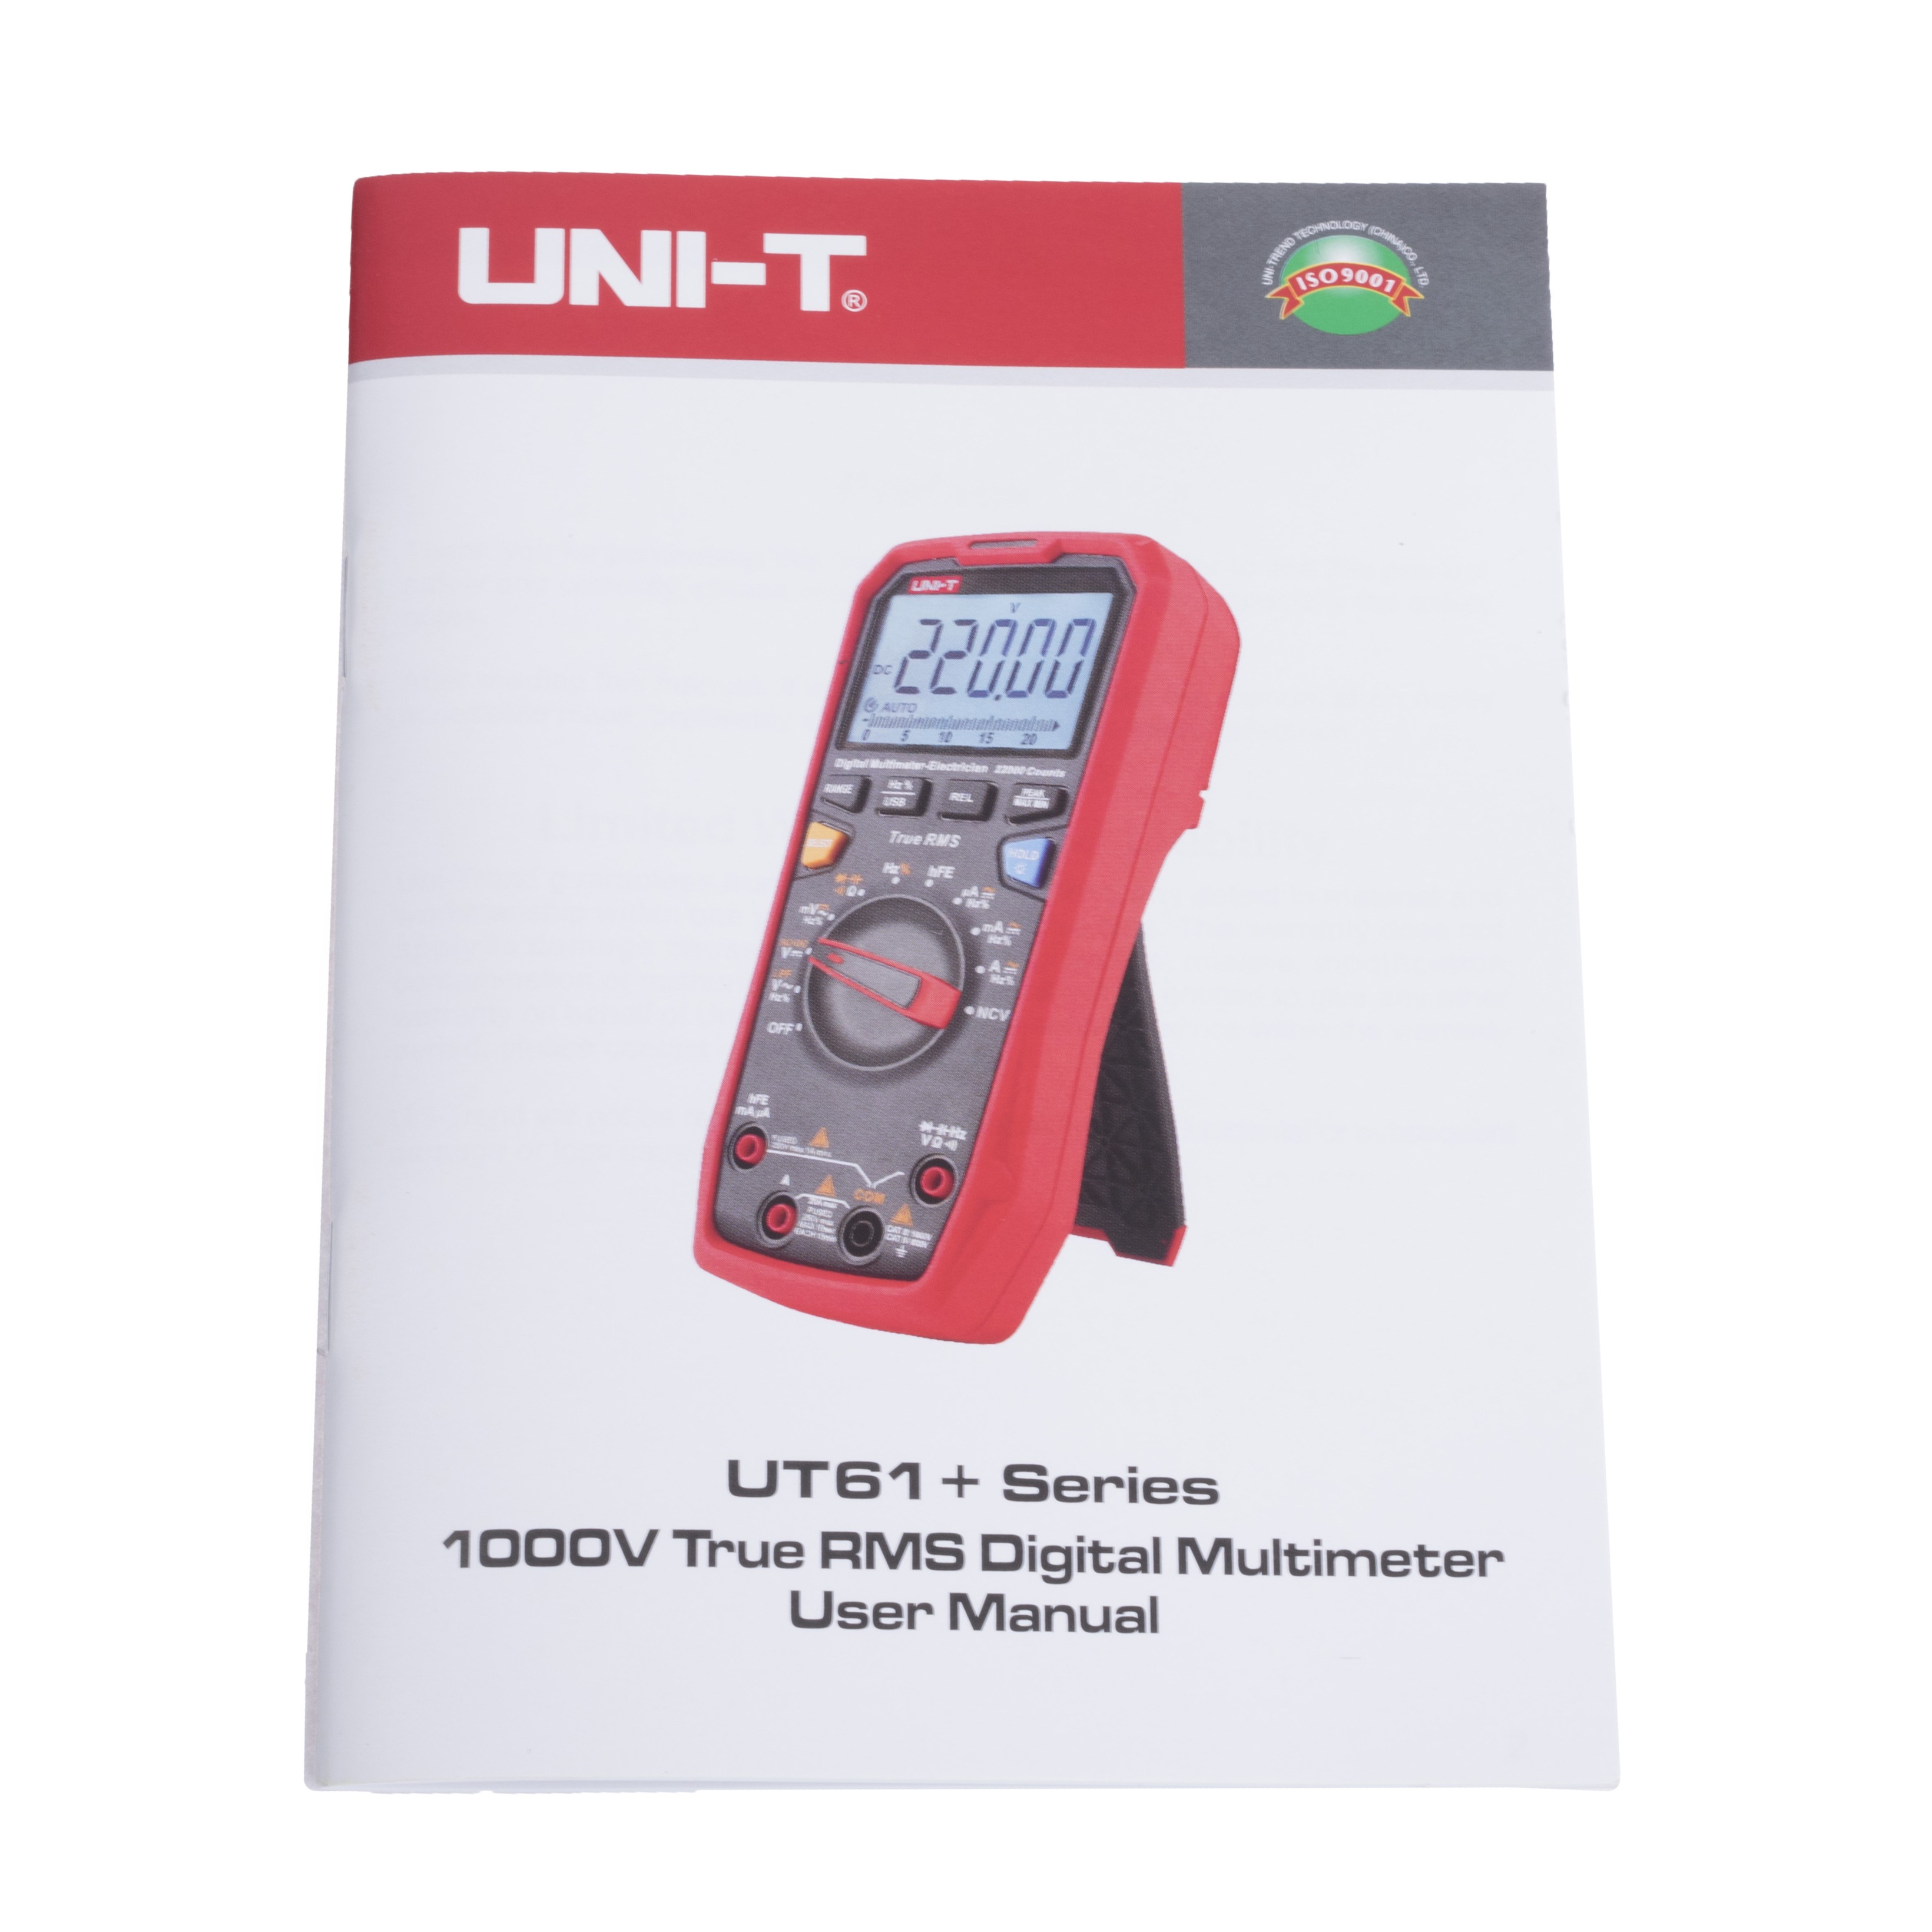 UT61D+ (UNI-T) Modern Digital Multimeter